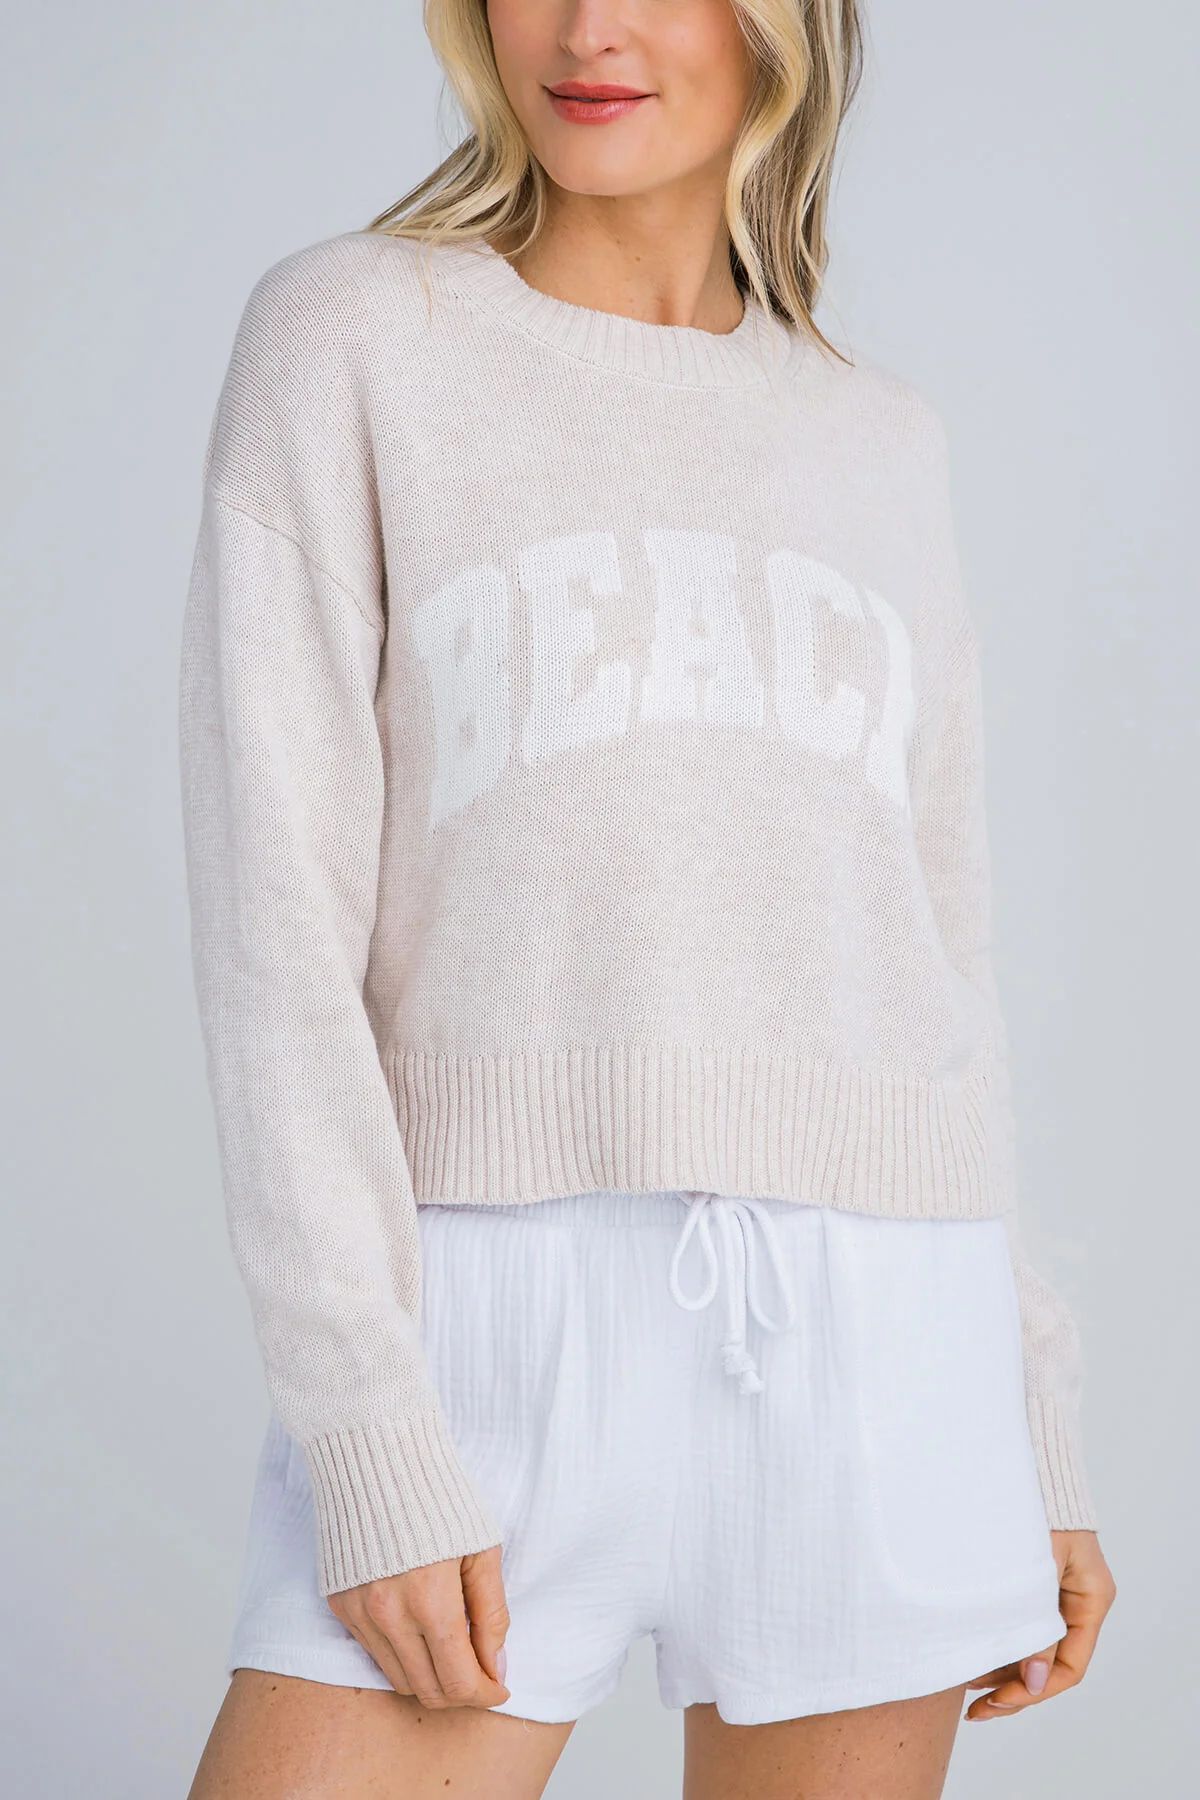 Z Supply Sunset Beach Sweater | Social Threads